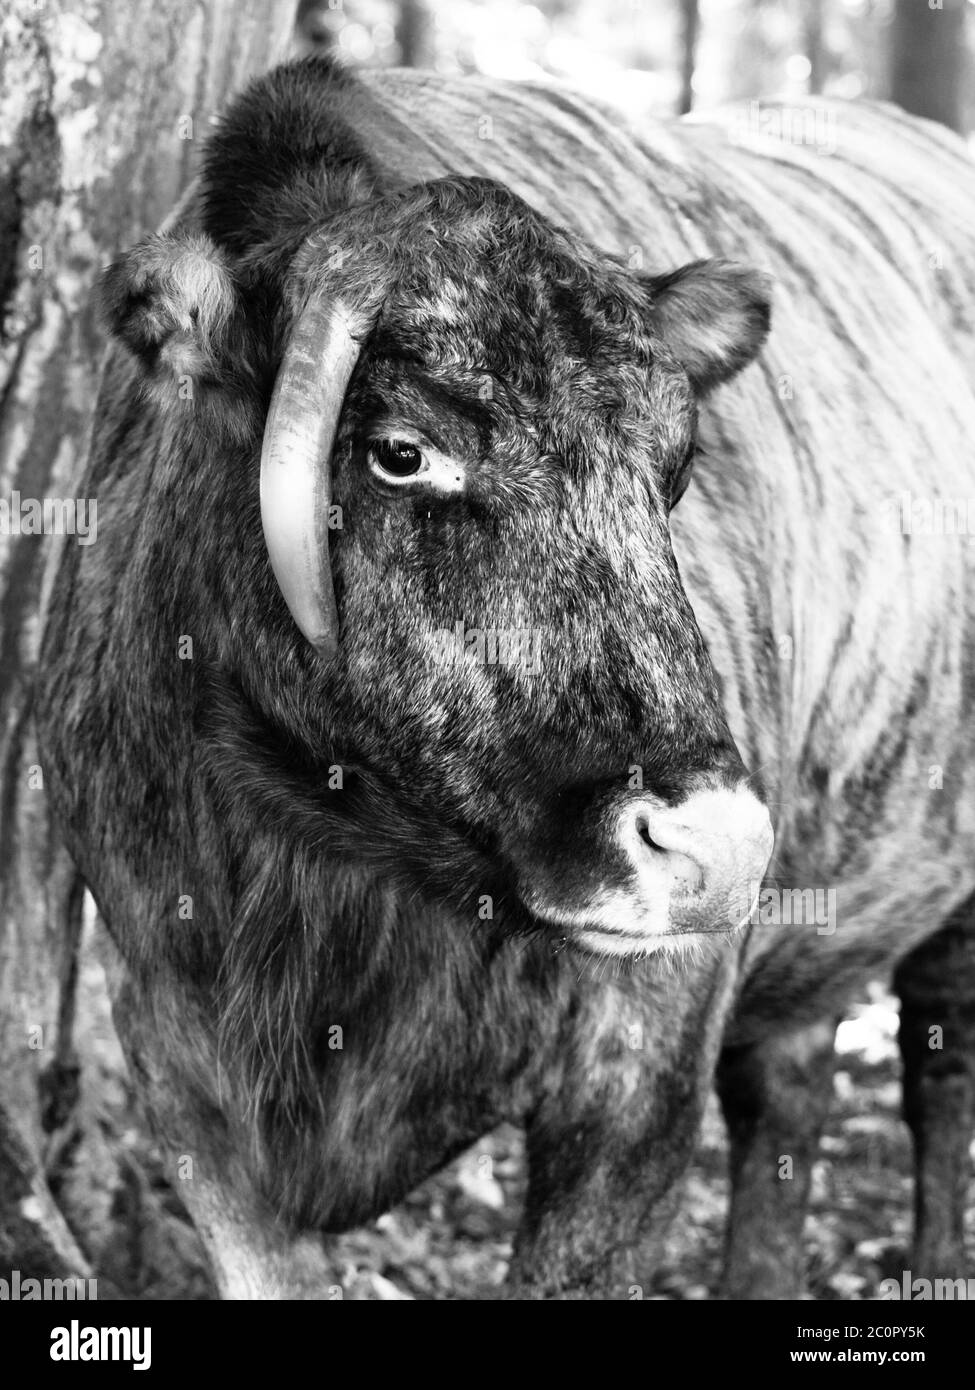 Zubron - hybride de bovins domestiques et de bisons européens, ou wisent. Image en noir et blanc. Banque D'Images